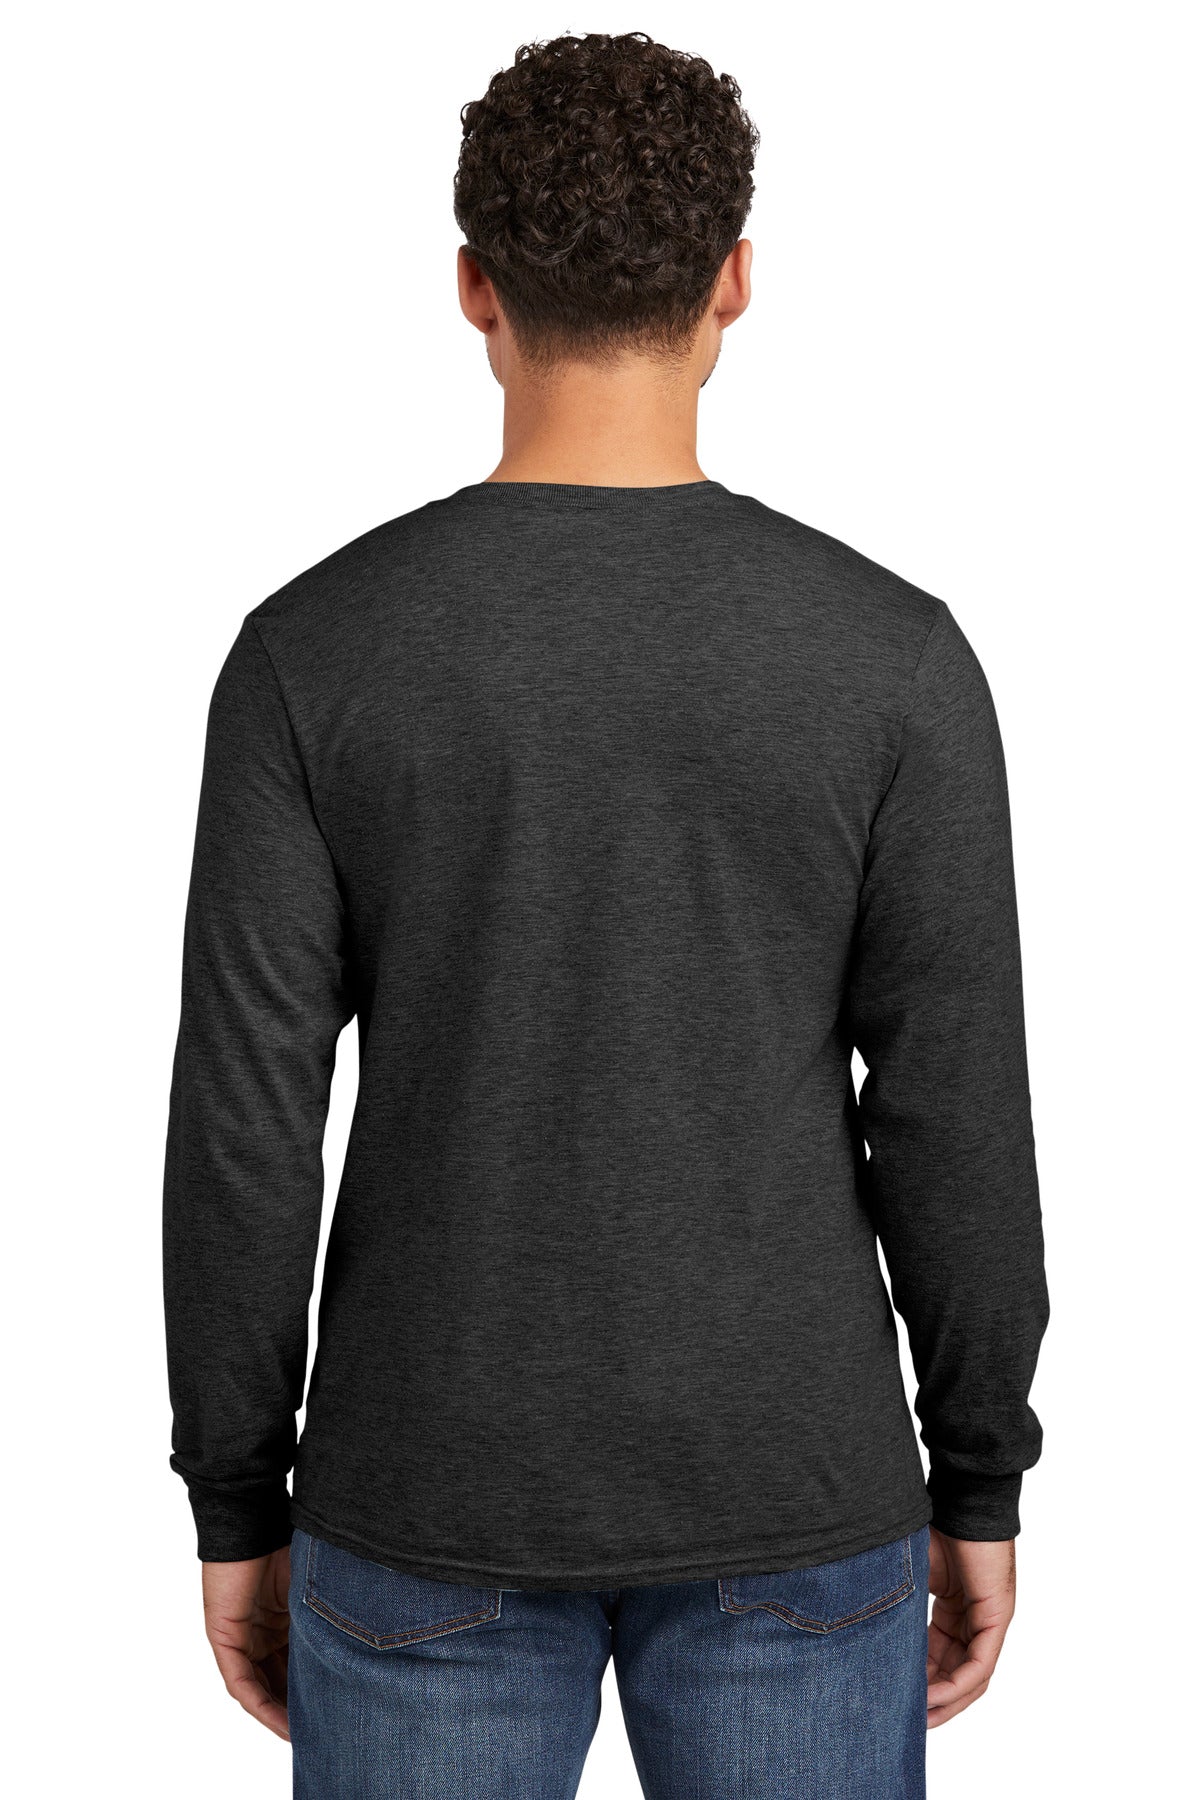 Jerzees Premium Blend Ring Spun Long Sleeve T-Shirt 560LS